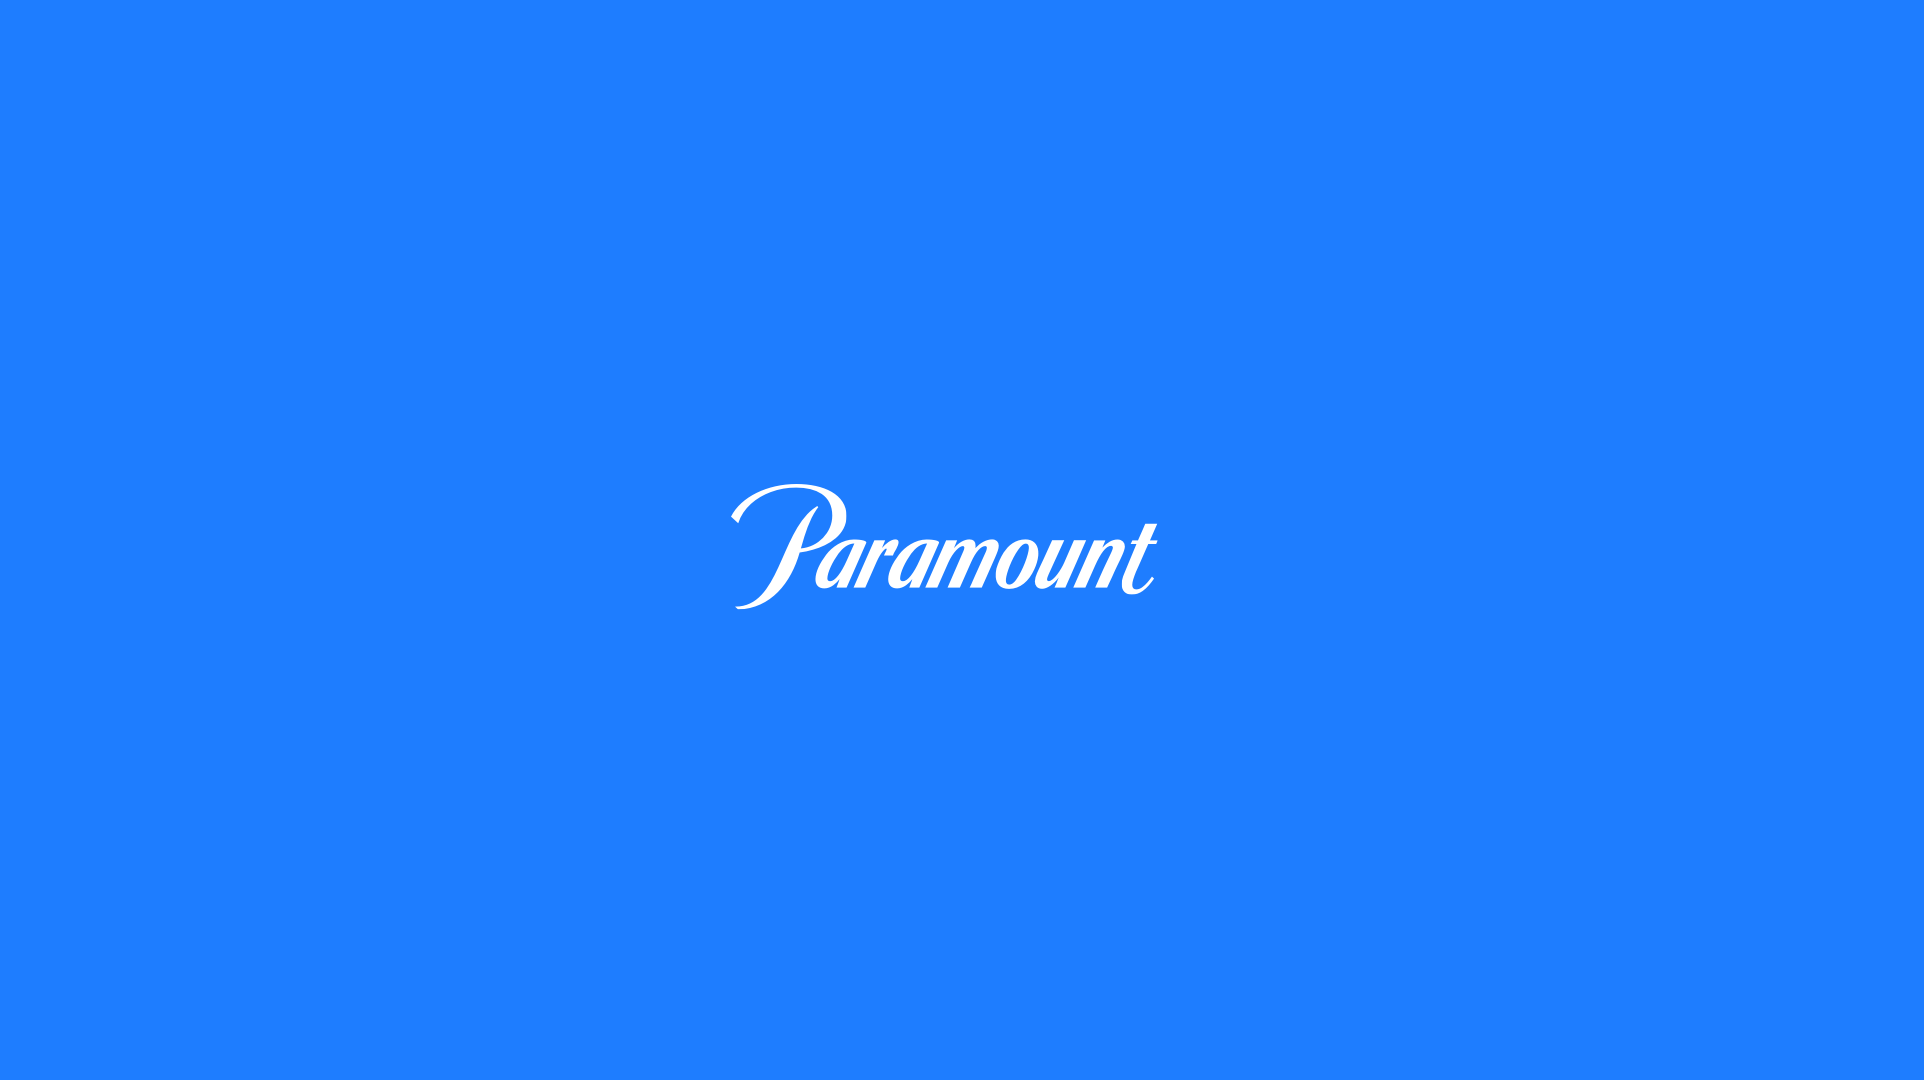 Paramount_logotype05